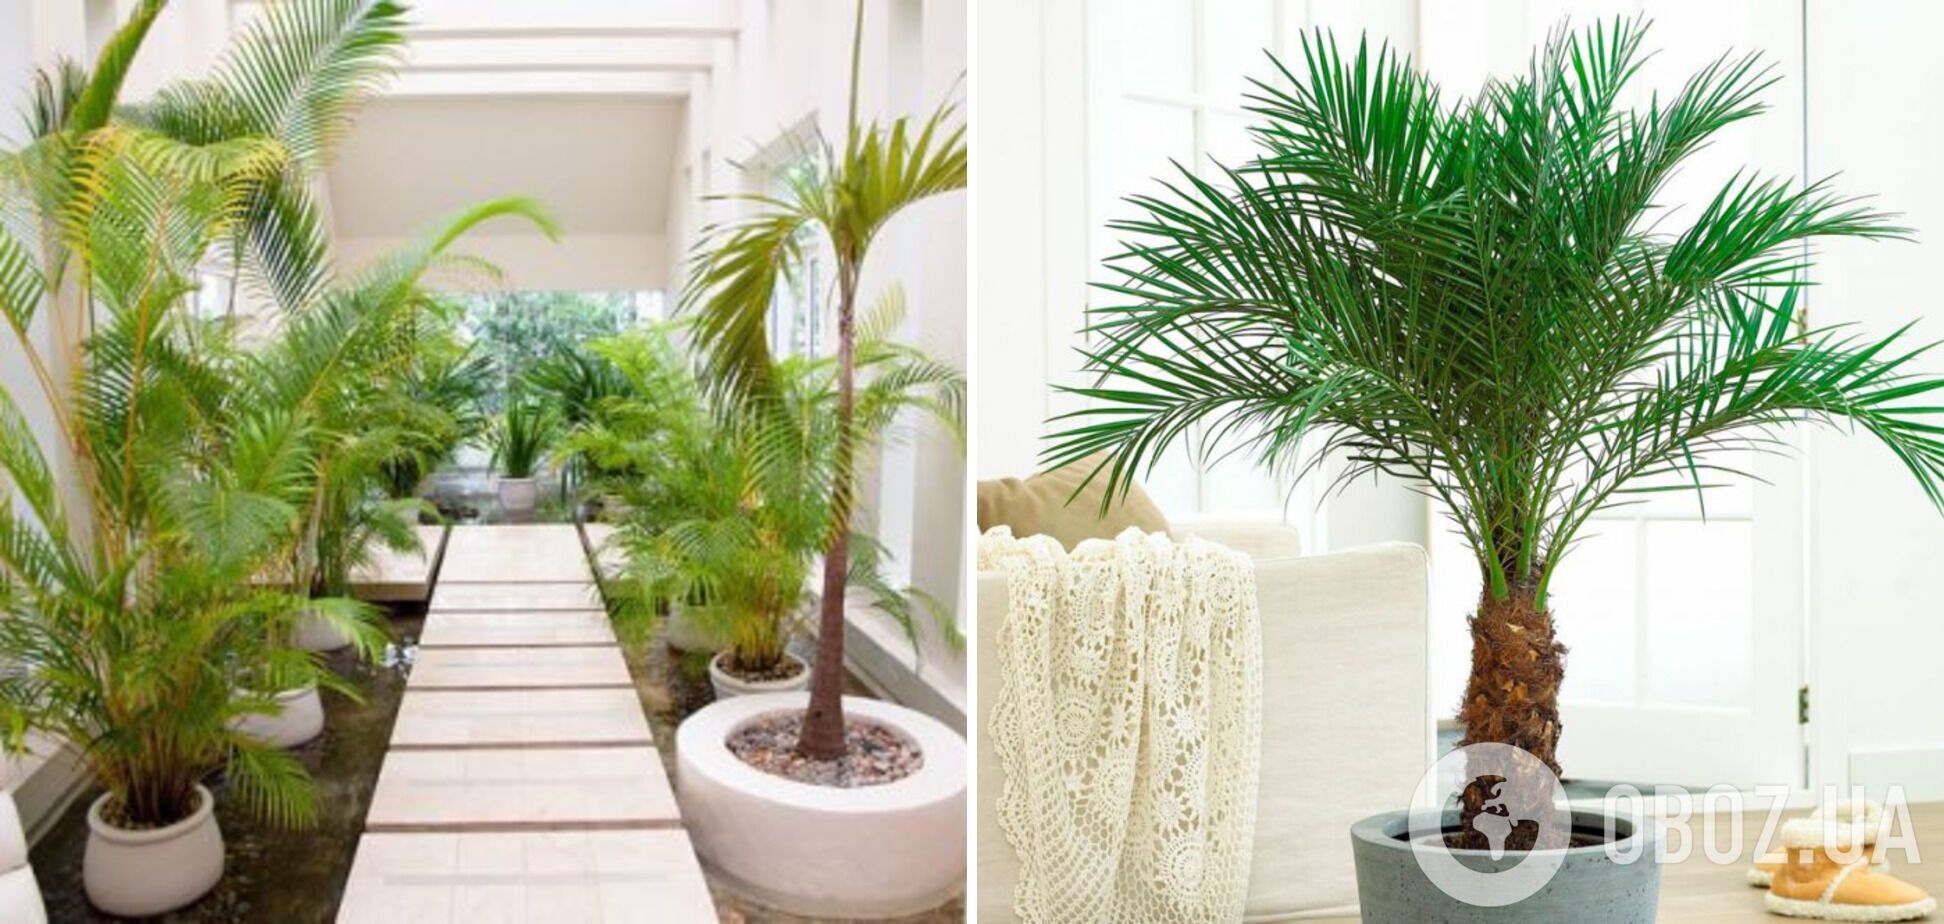 Какие комнатные растения лучше всего впитывают влагу и избавляют от плесени: список